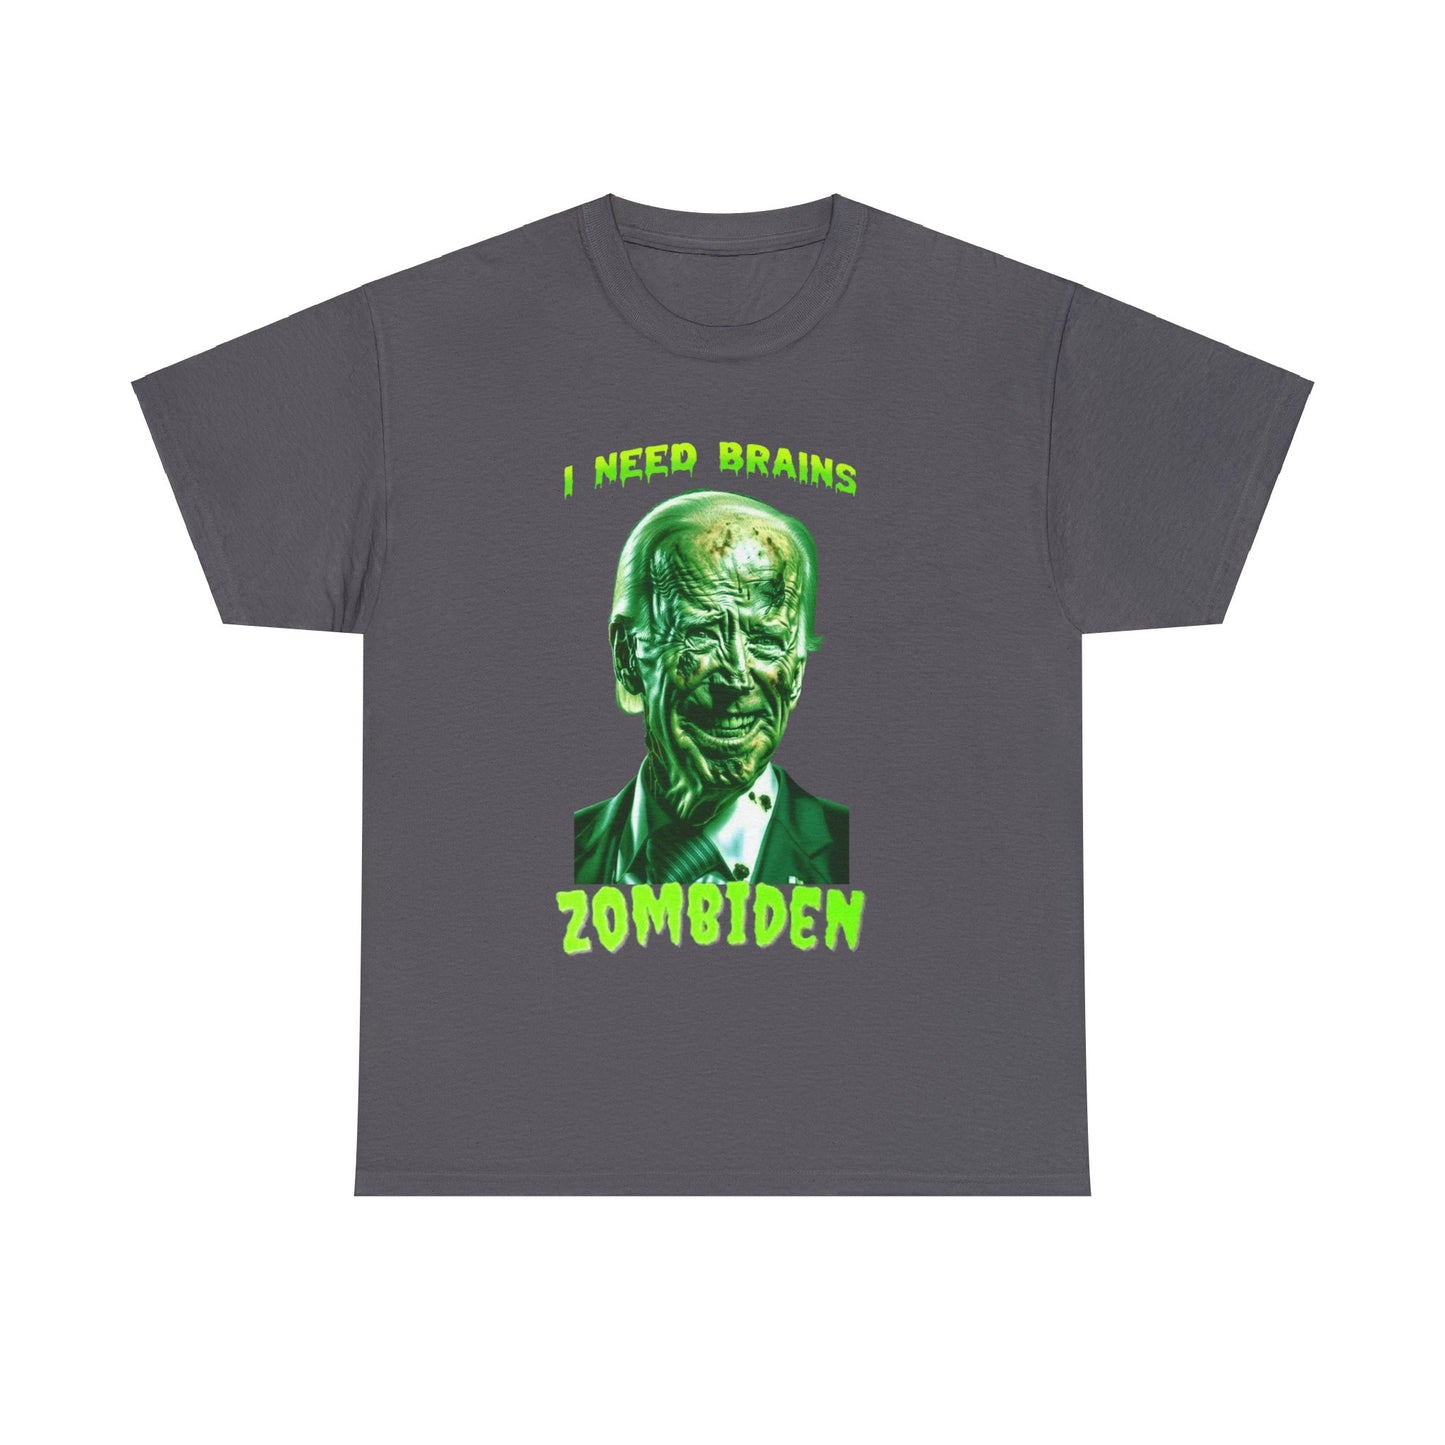 Zombiden Shirt I need Brains